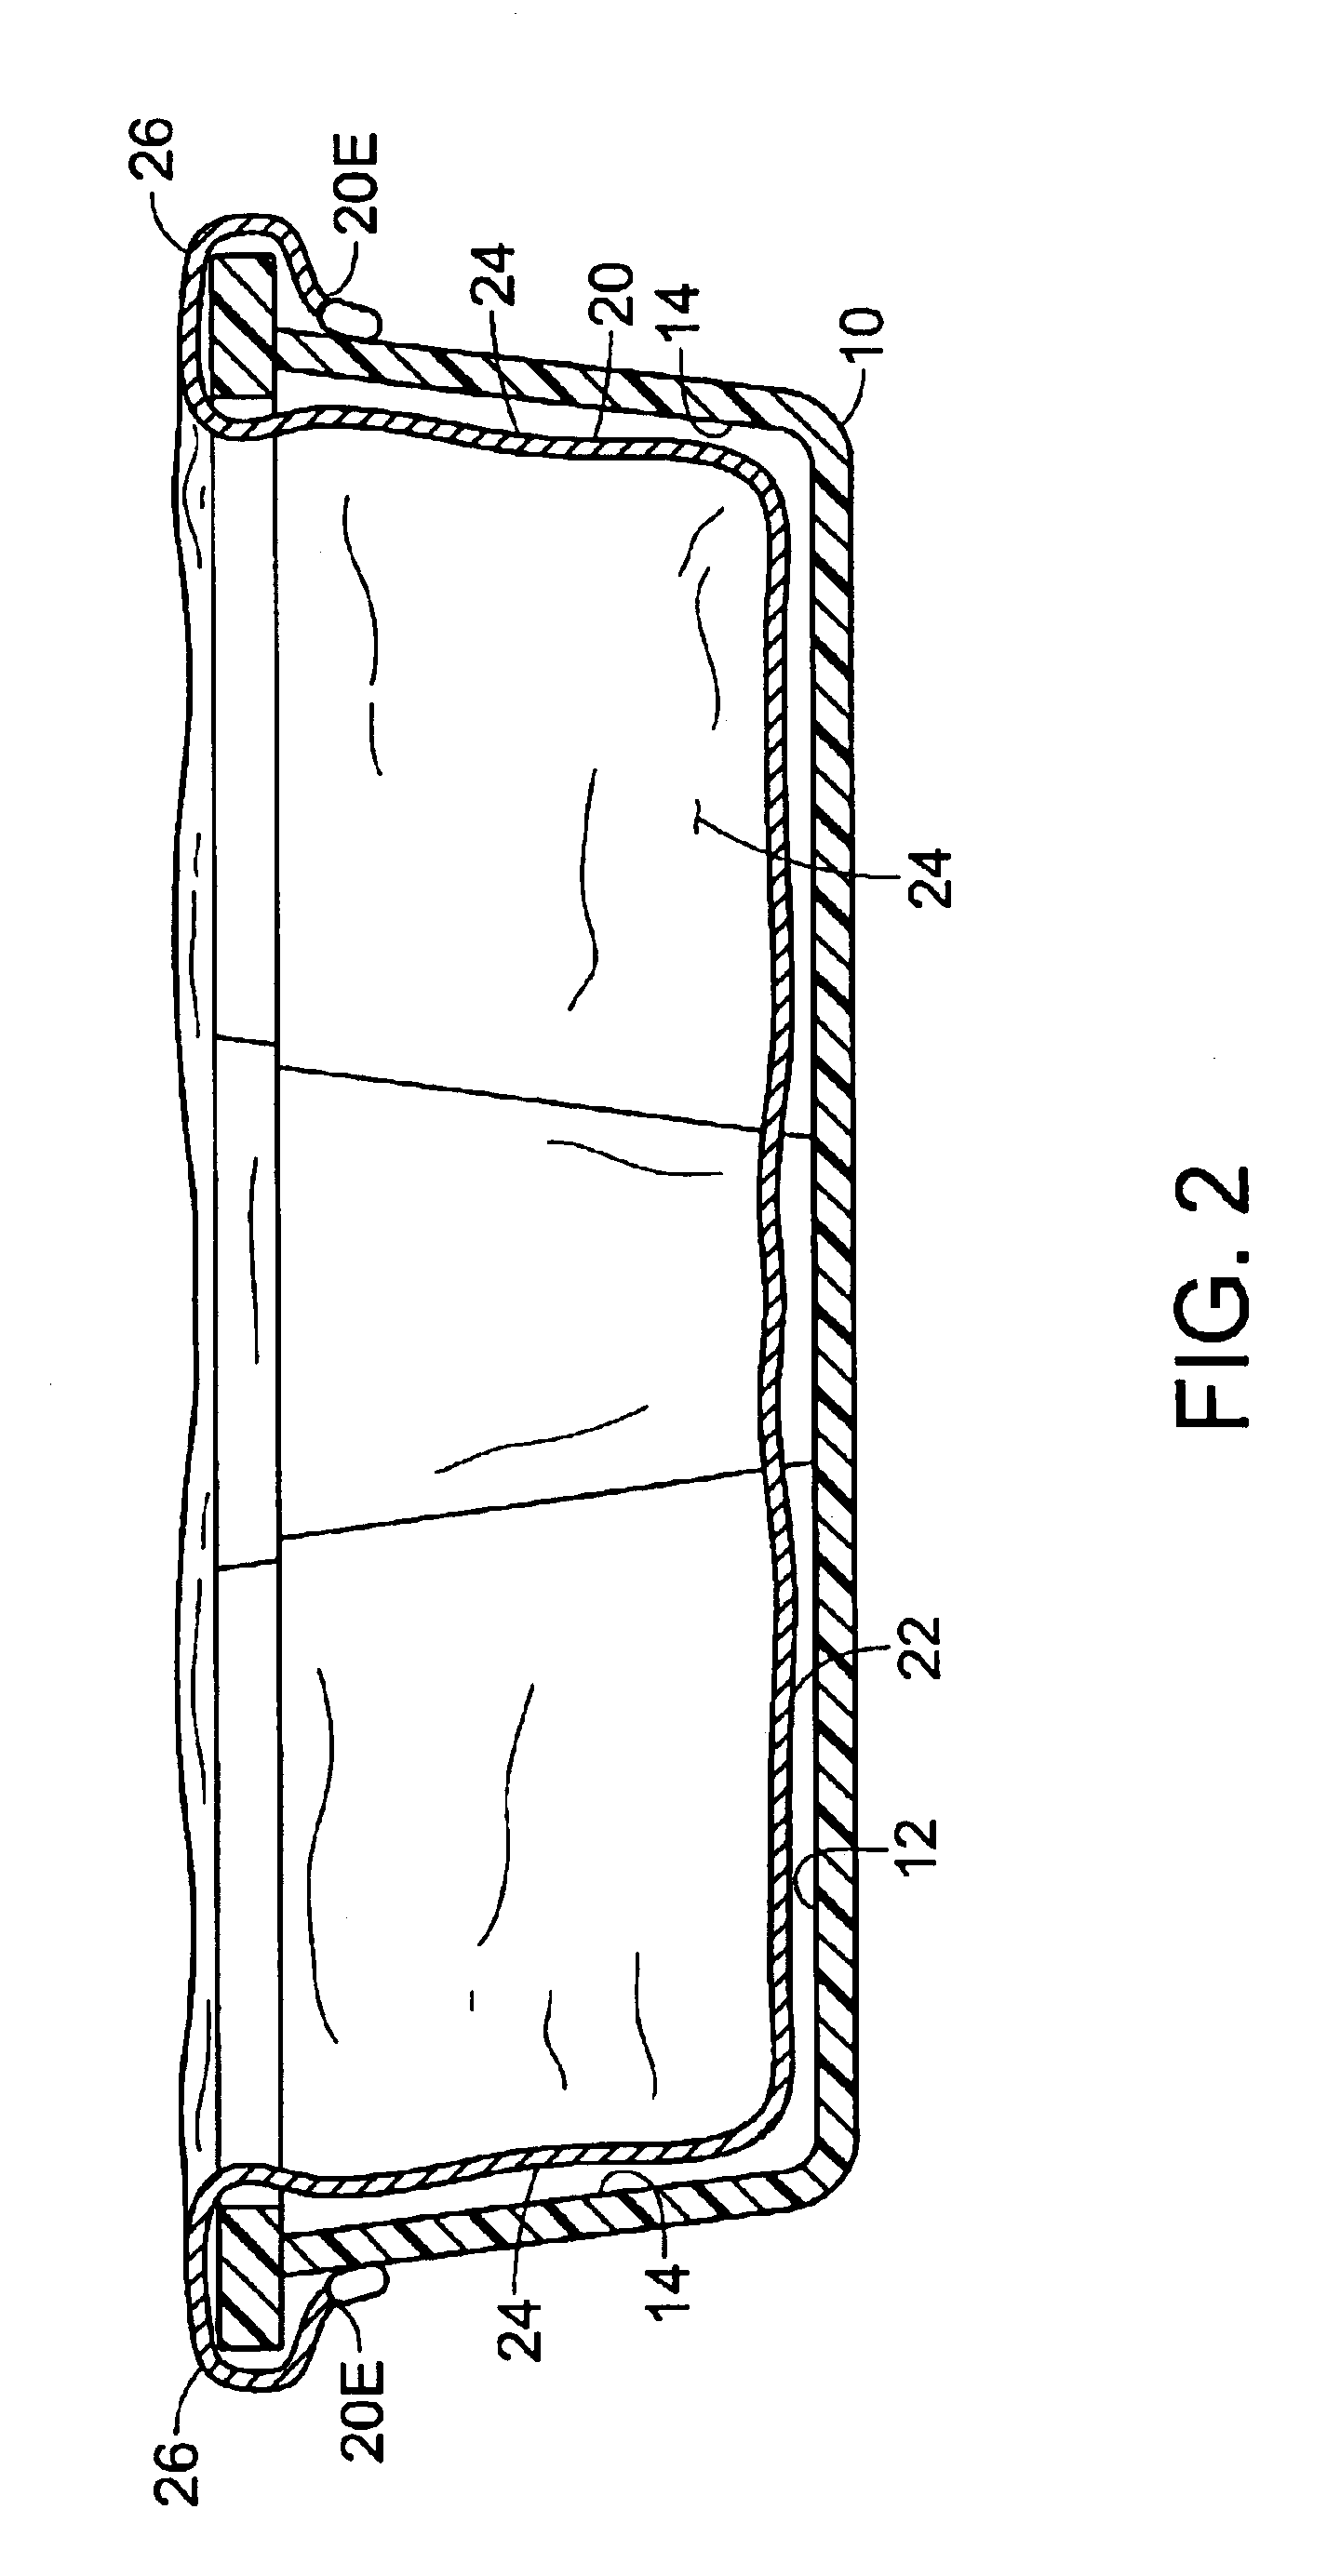 Pedicure basin liner system